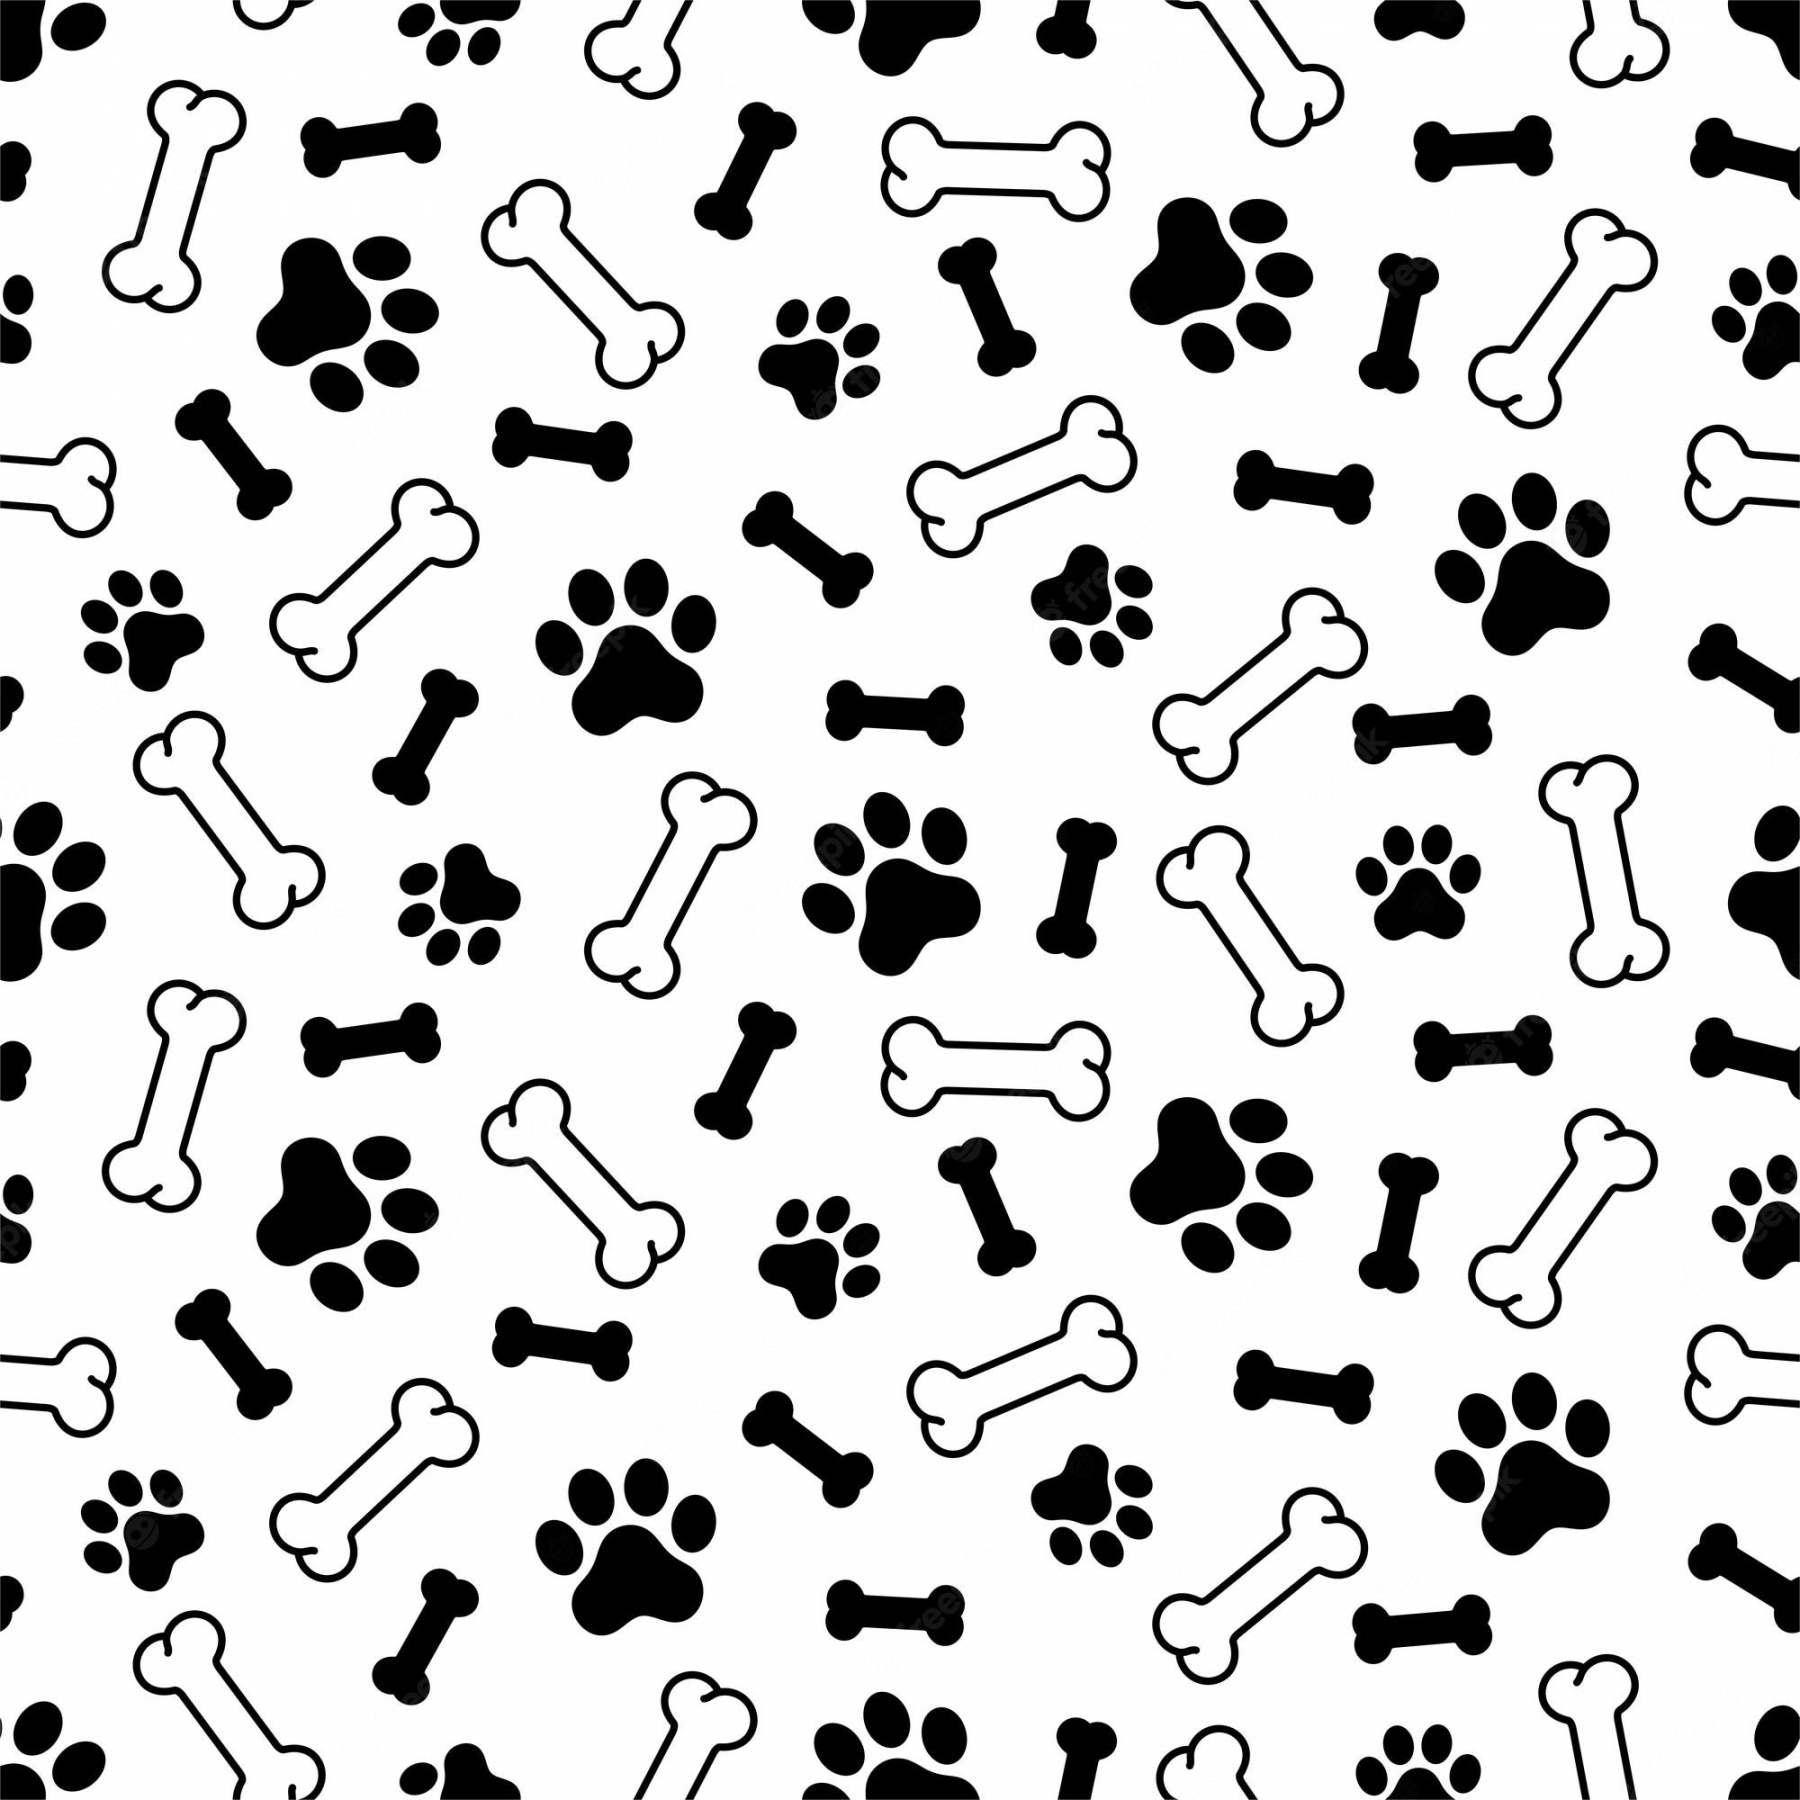 Bone Pattern Images - Free Download on Freepik - FREE Printables - Dog Bone Pattern